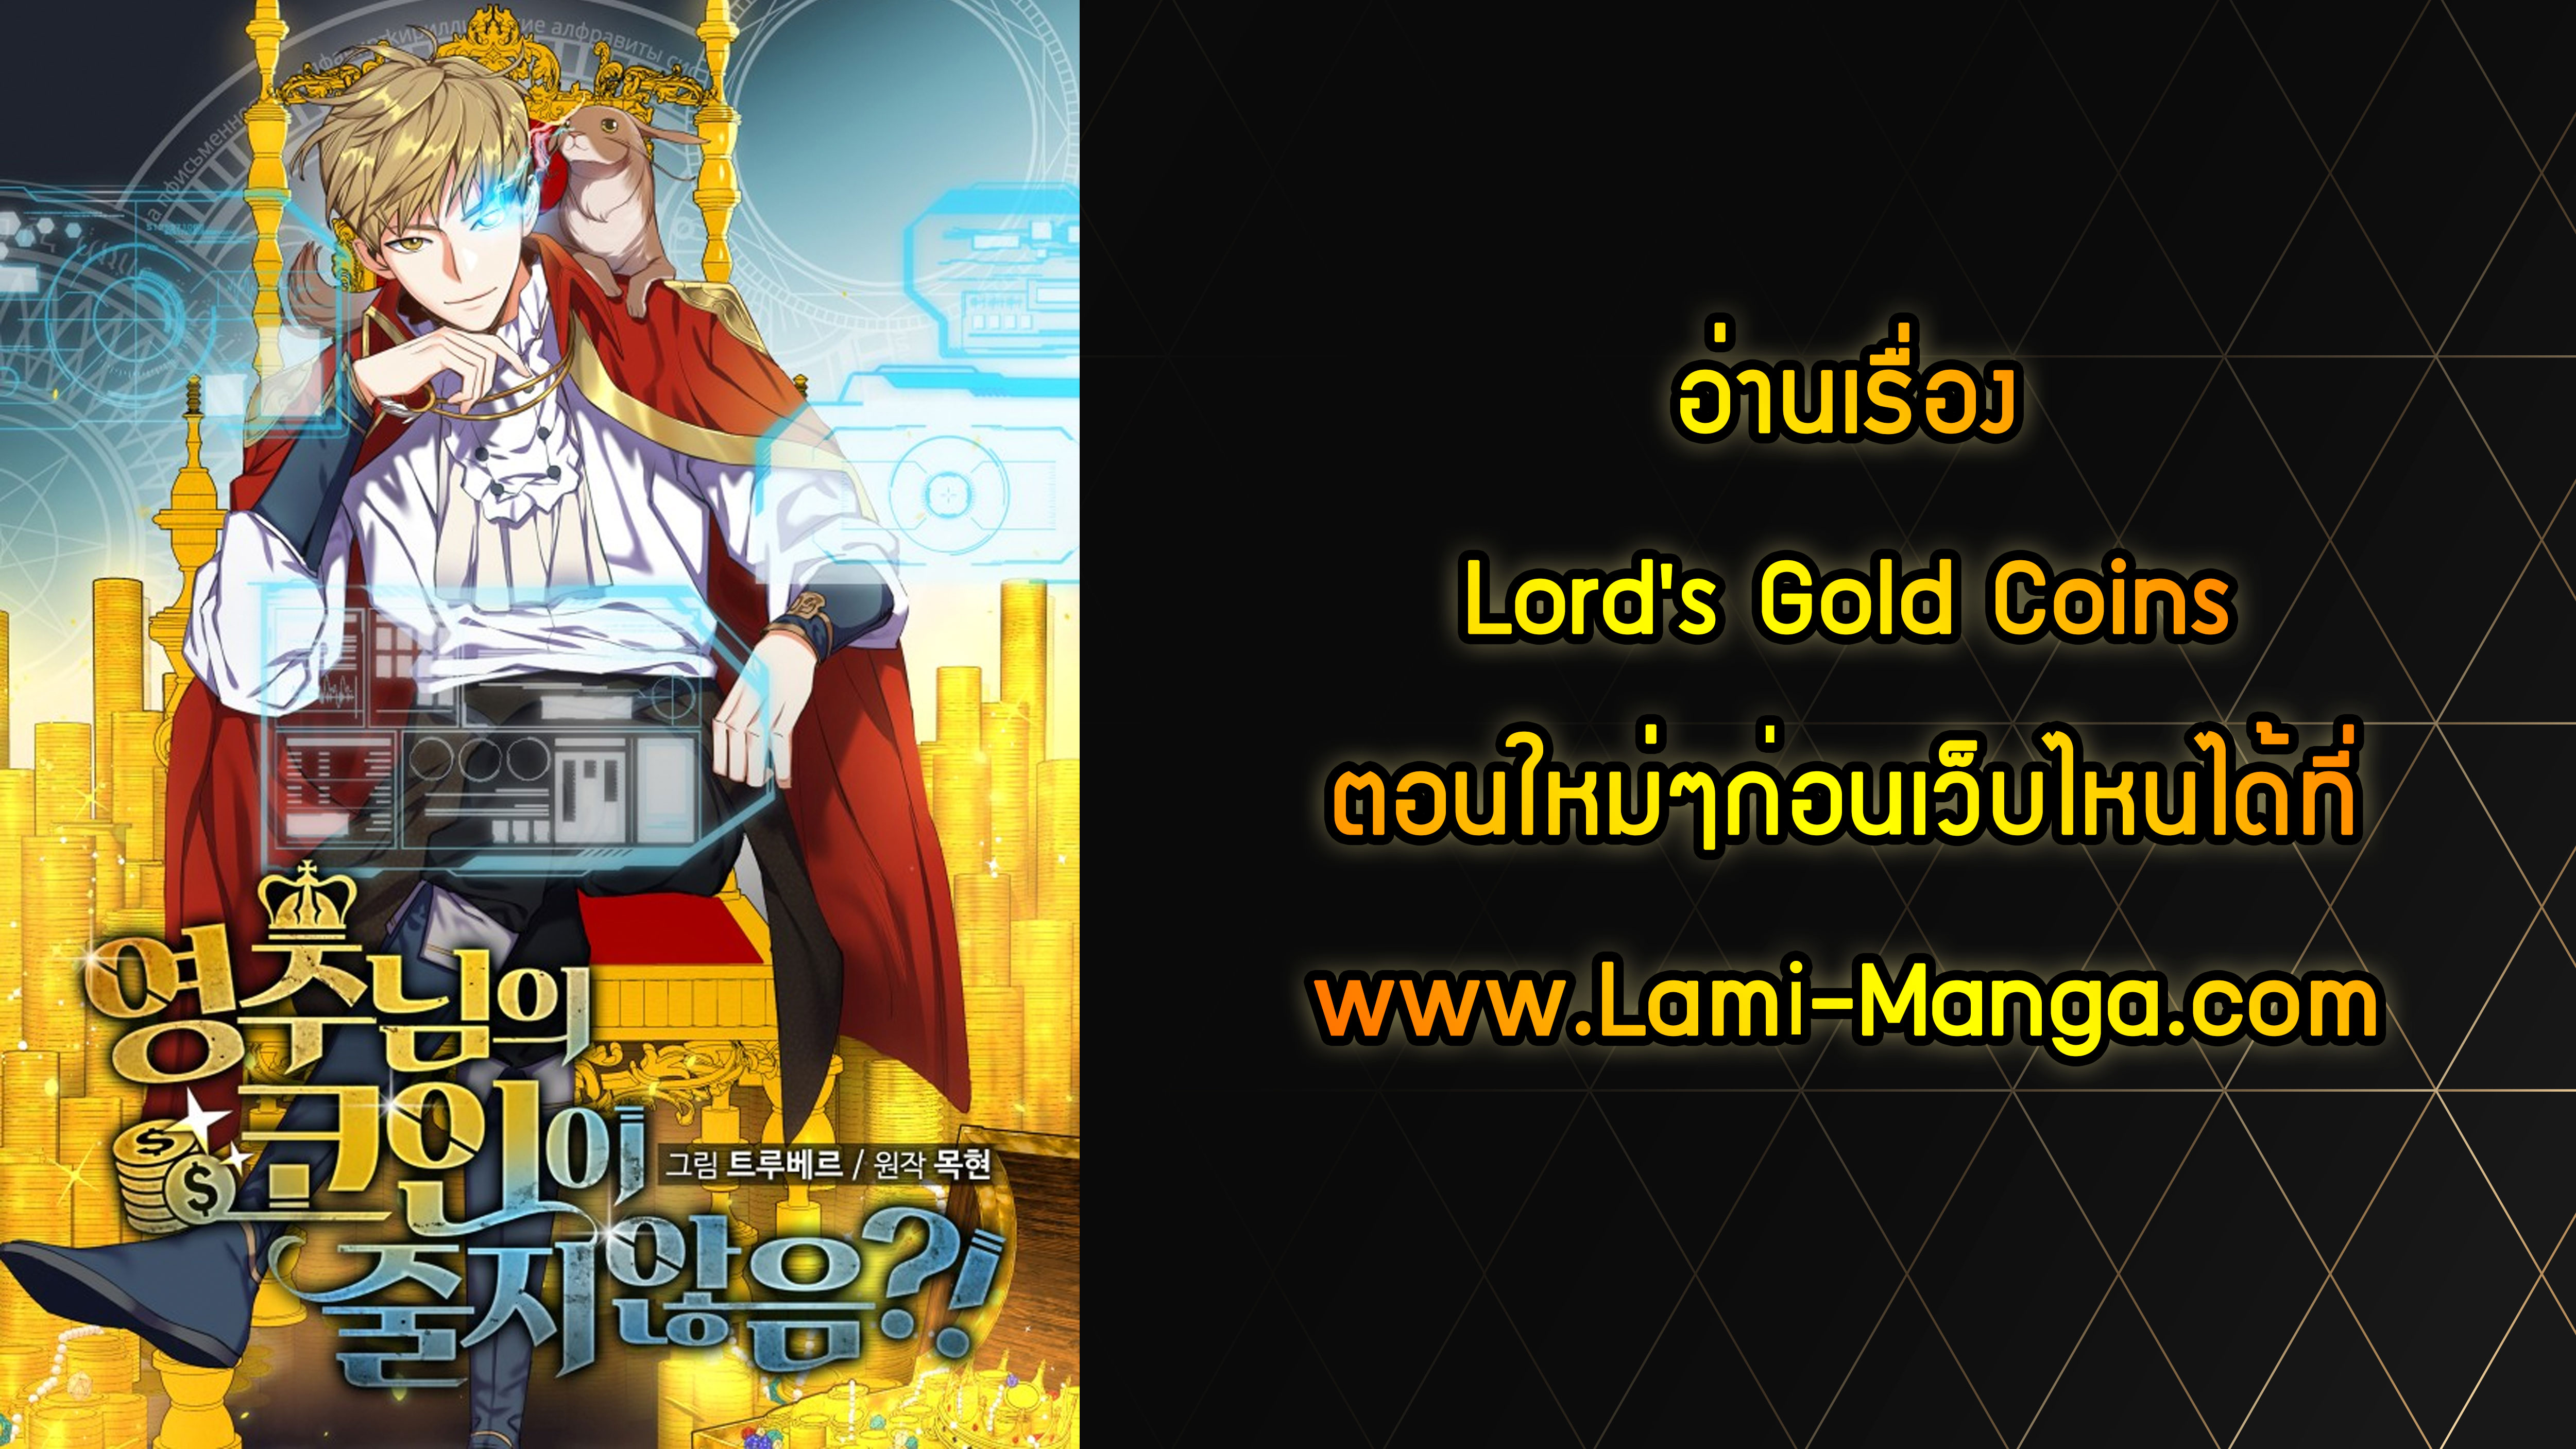 Lordโ€s Gold Coins 13 10